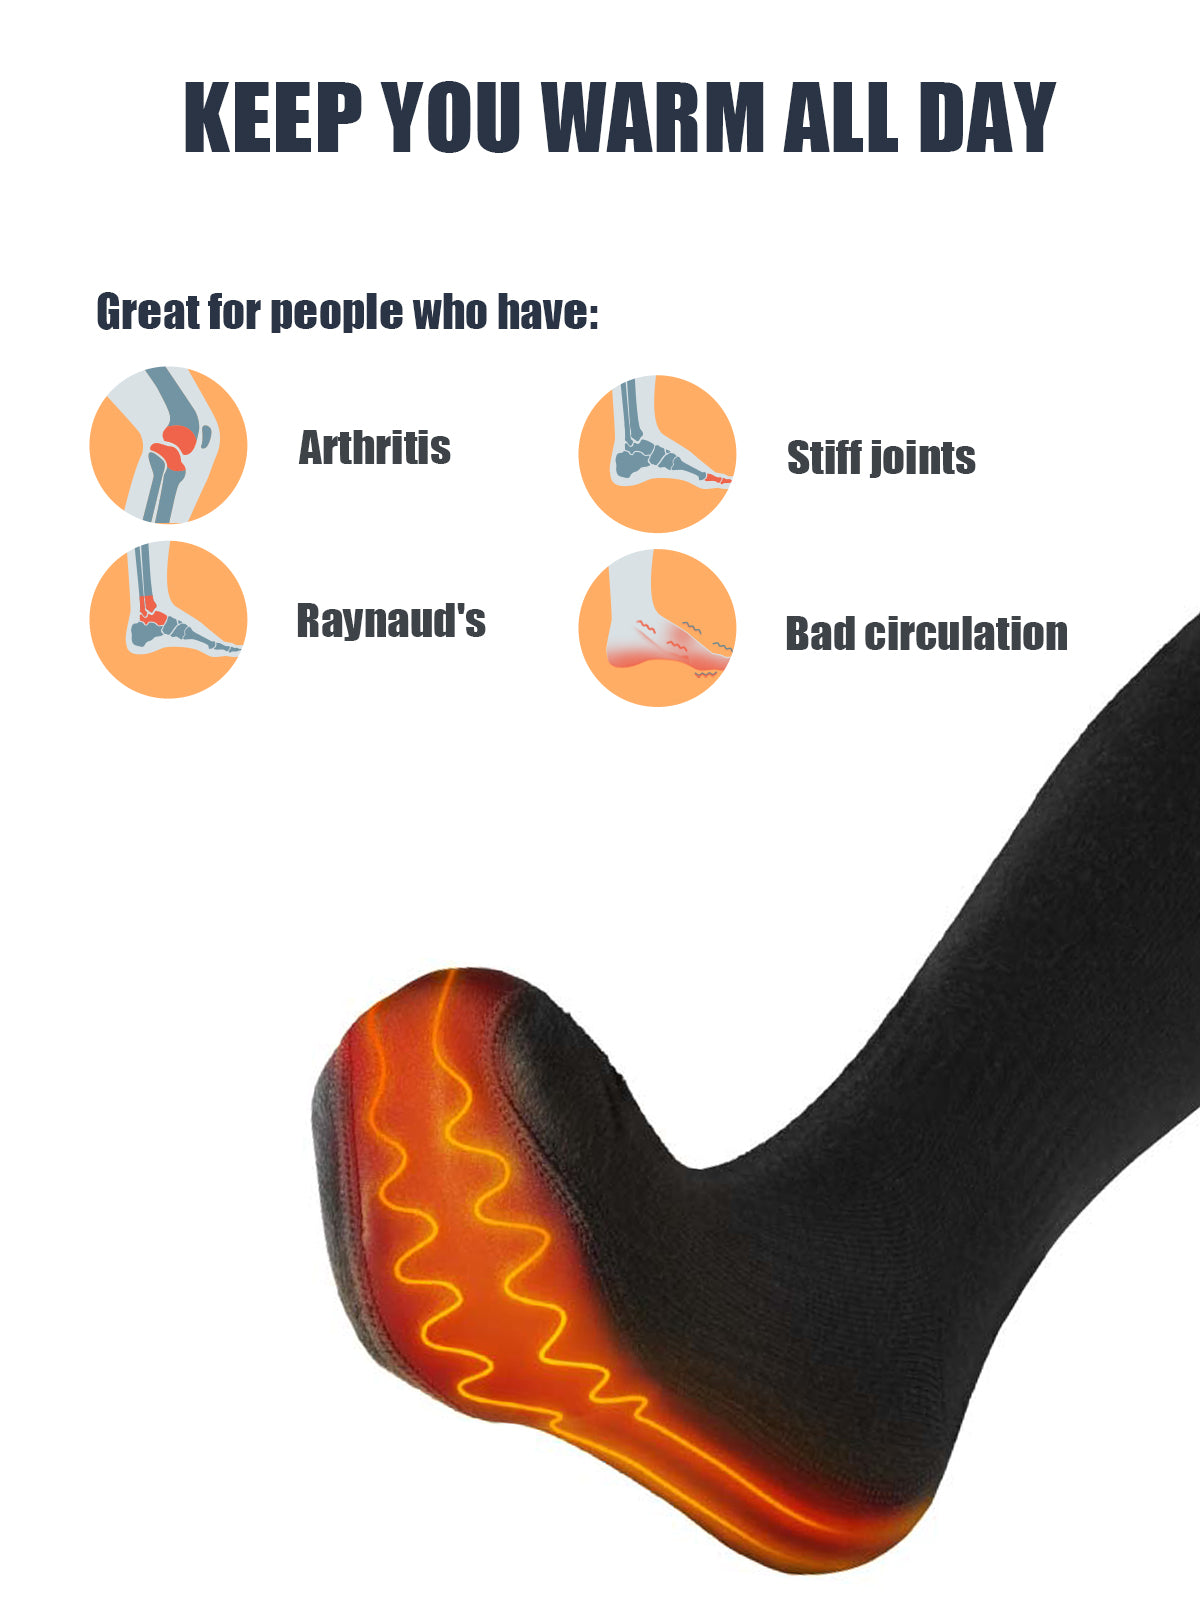 Heated Socks